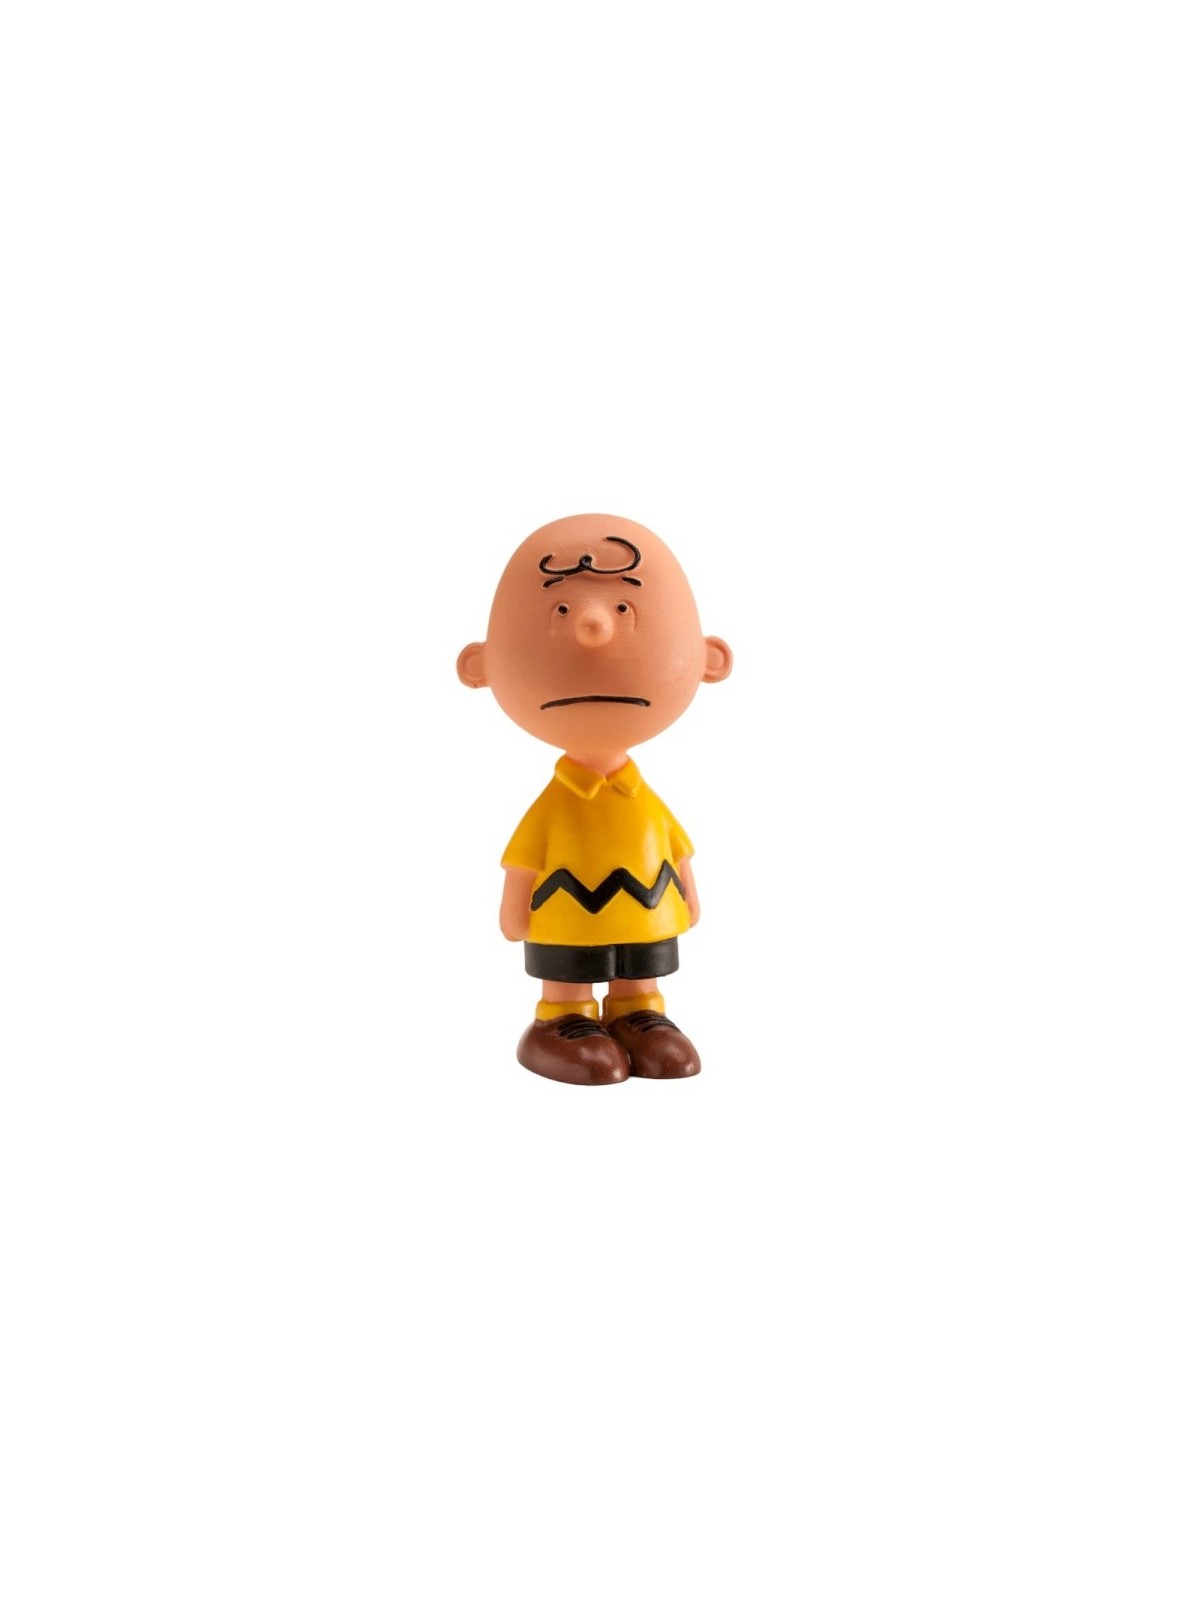 Dekorative Figur -  Snoopy  - Charlie Brown